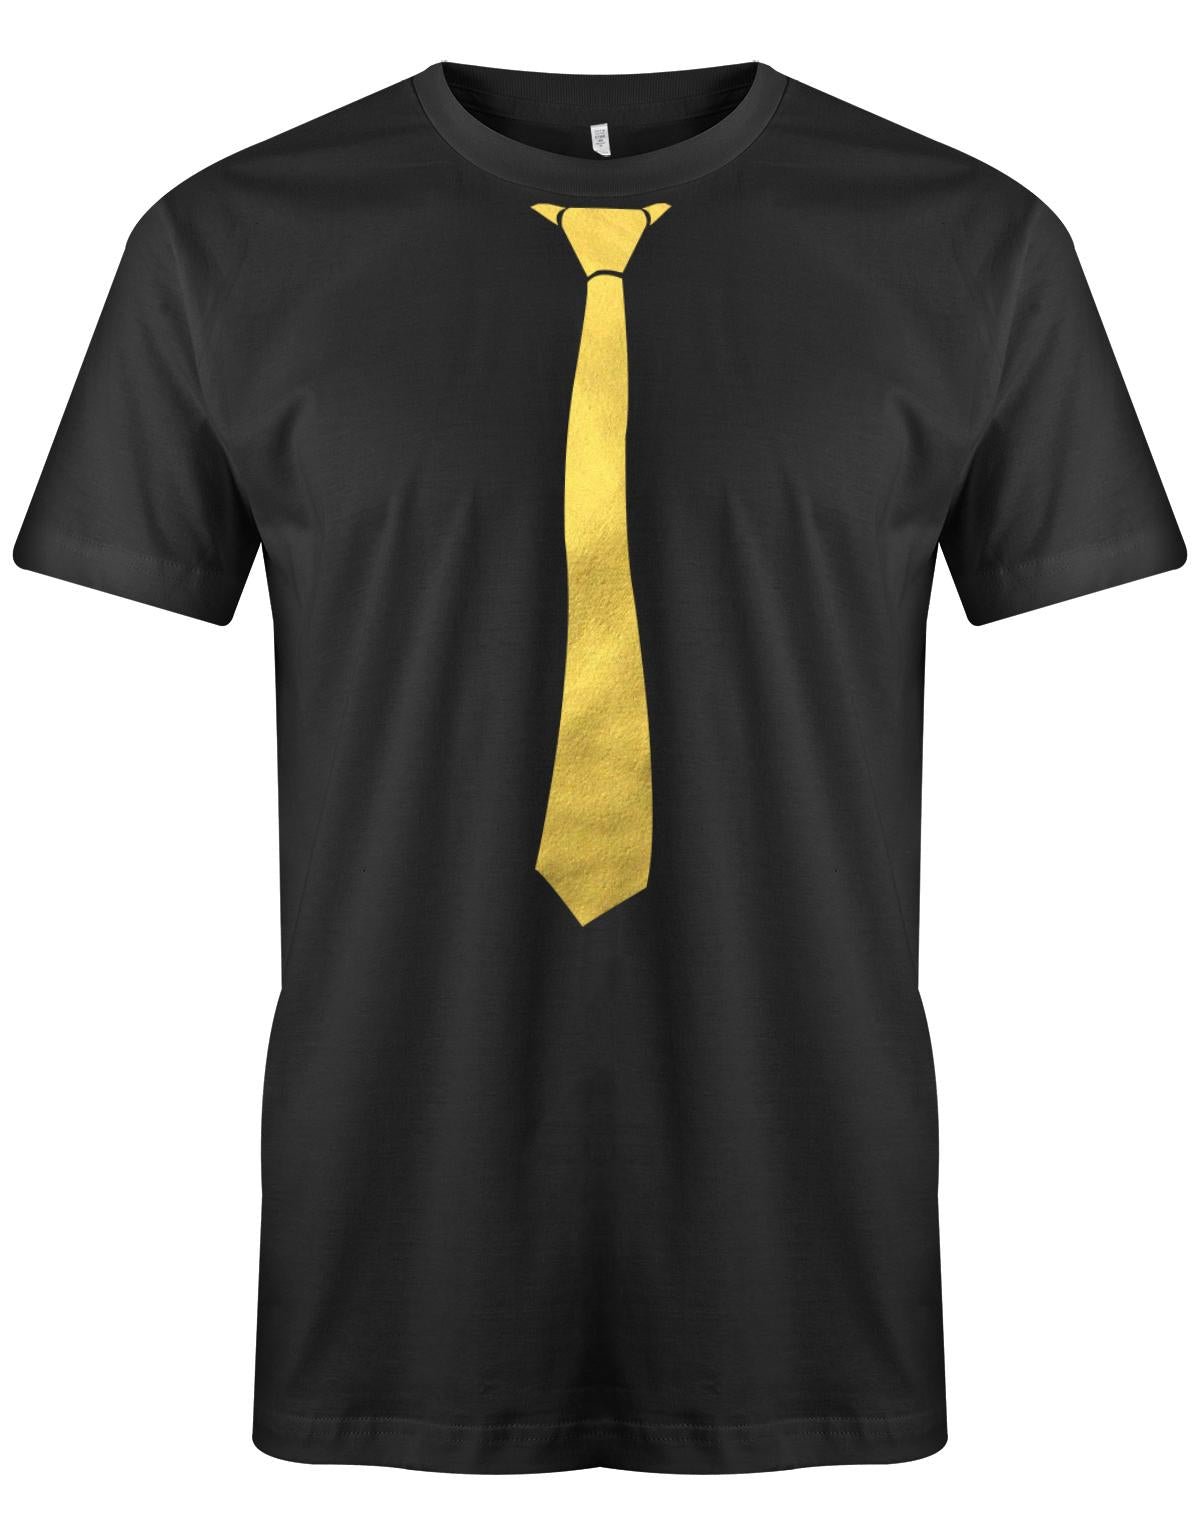 Krawatte-Sportlich-Herren-Shirt-JGA-SChwarz-Gold